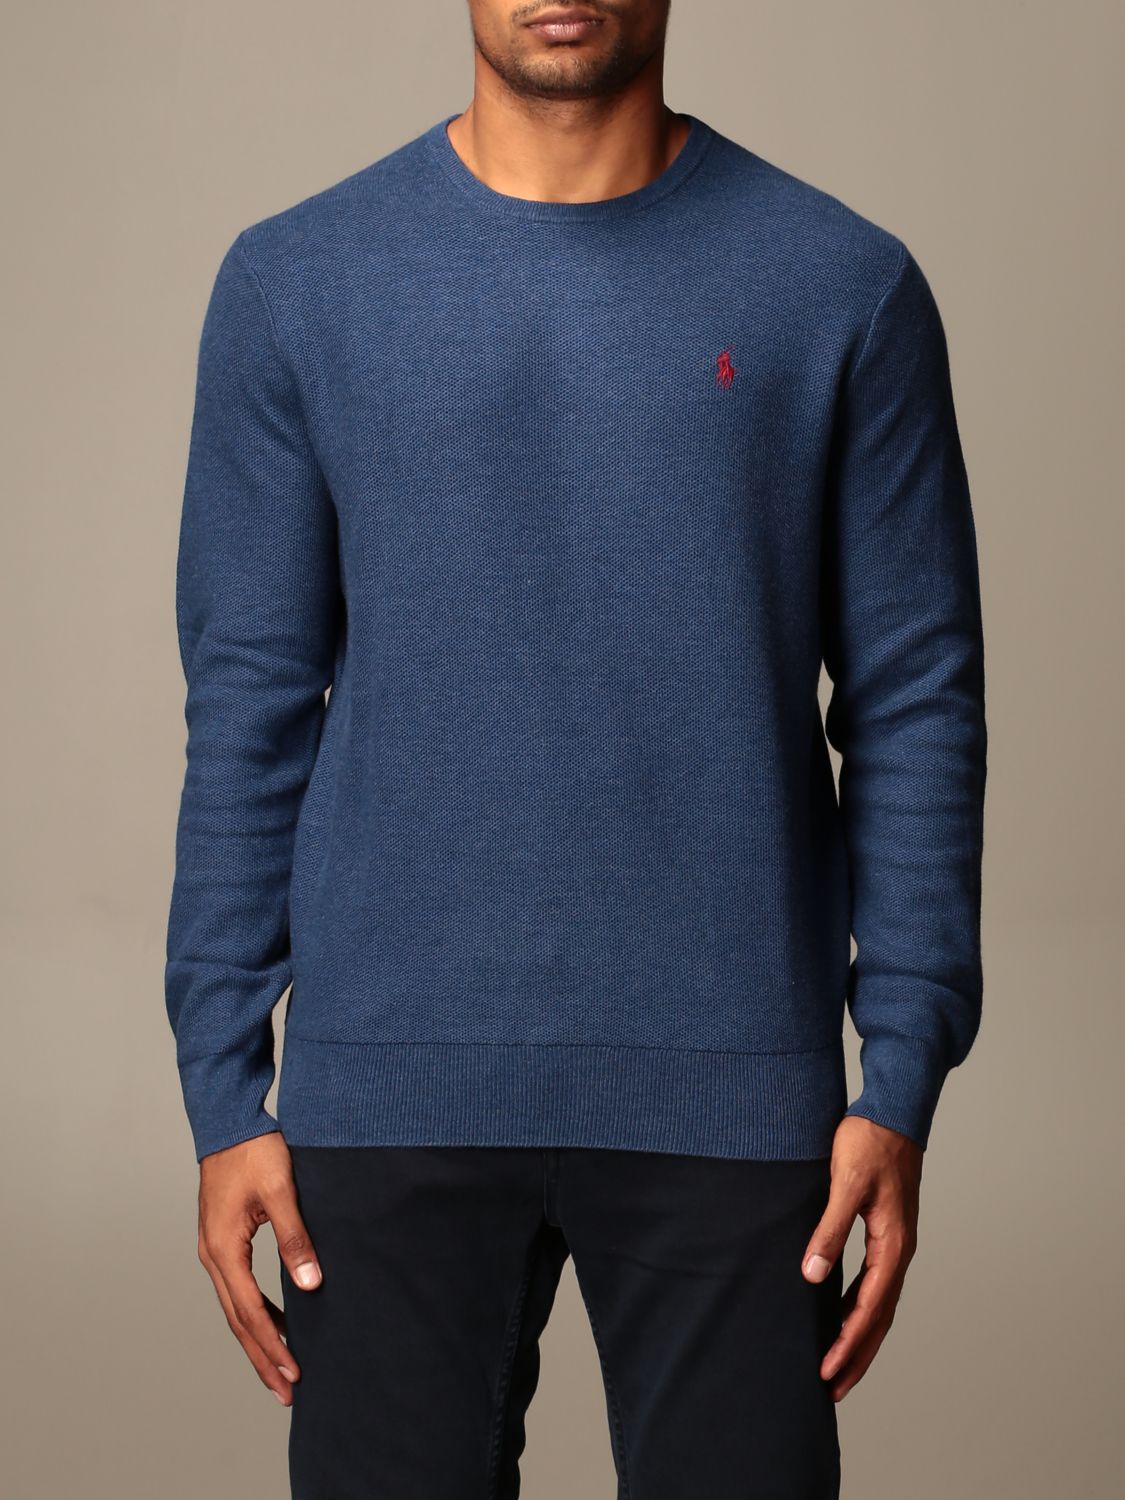 polo ralph lauren blue sweatshirt